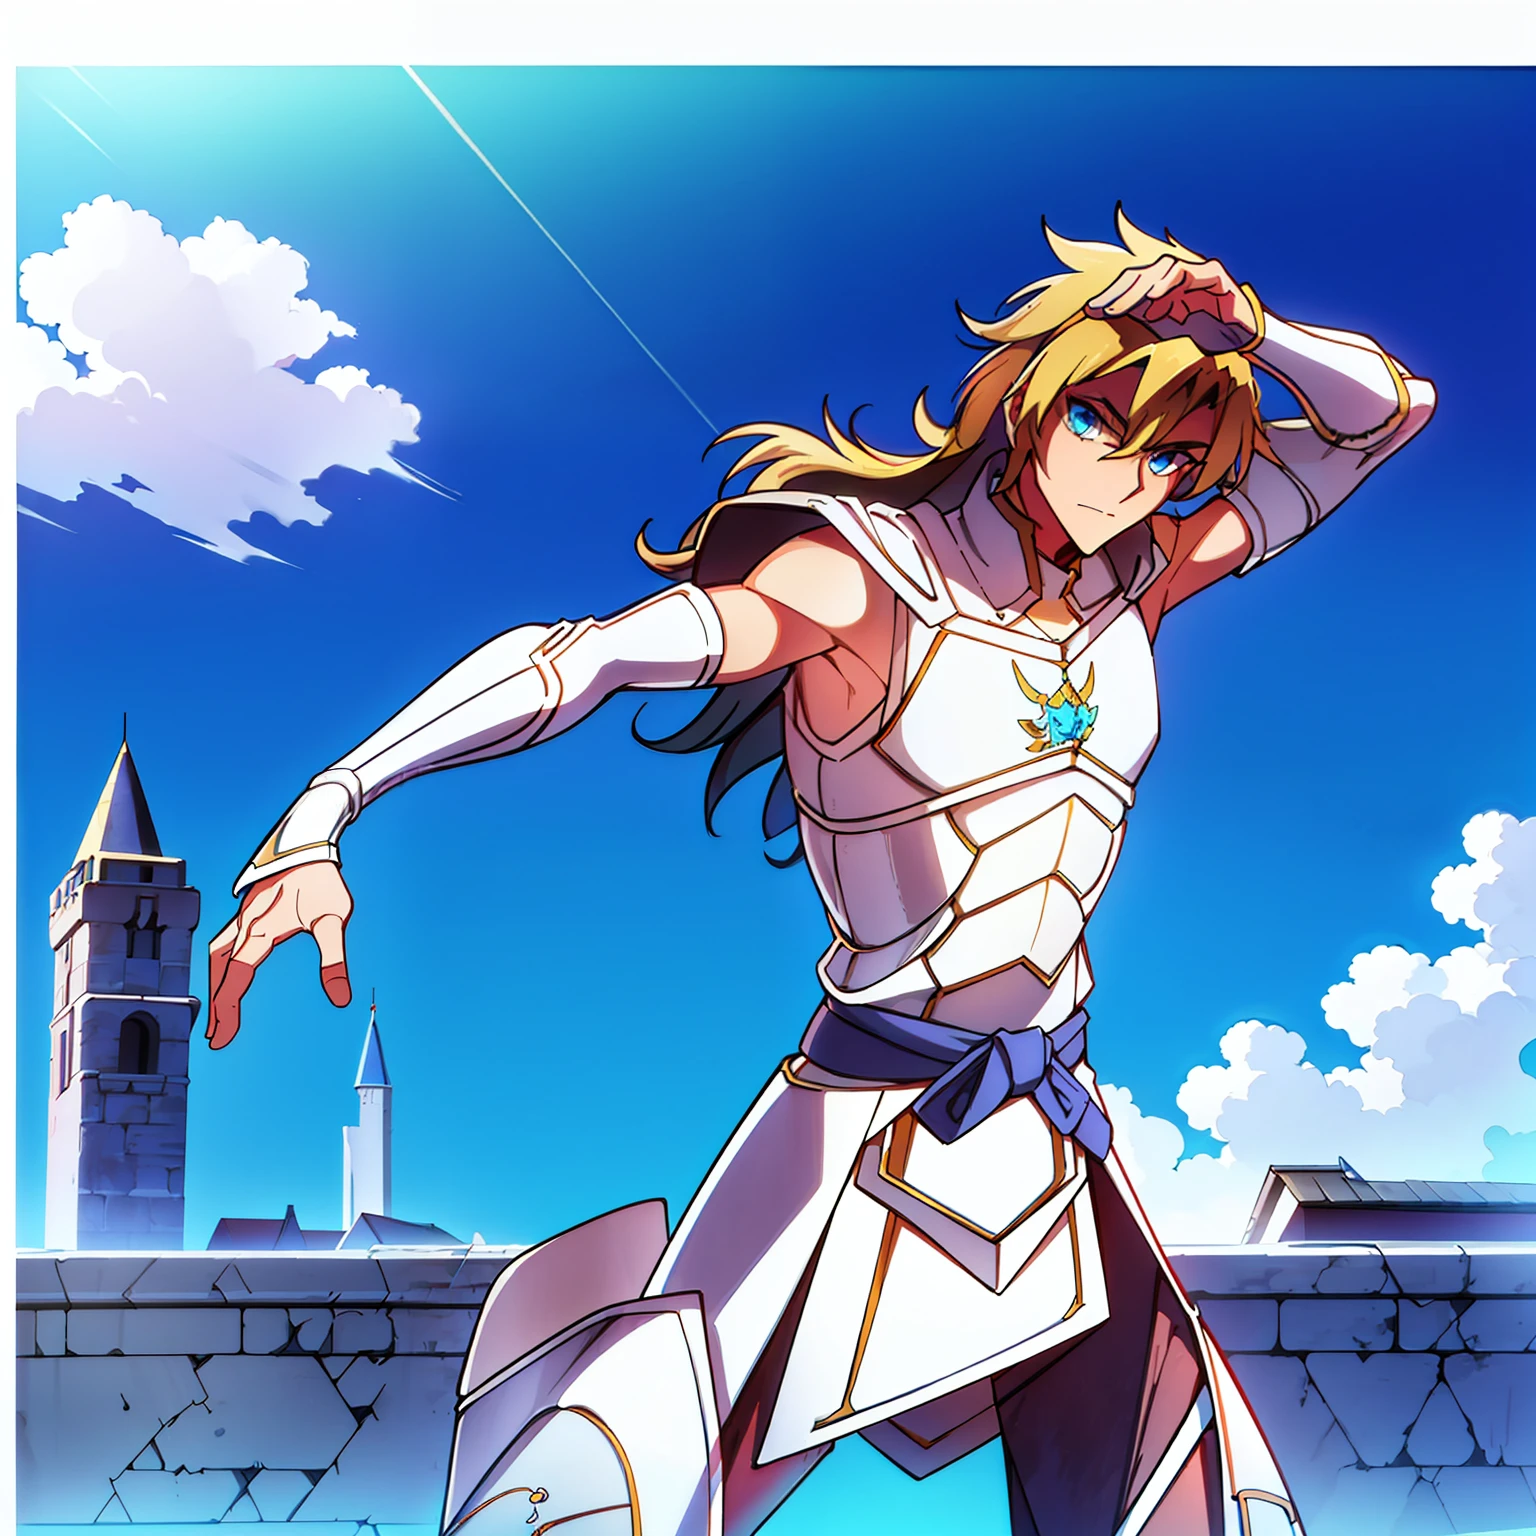 un hombre de 30 años, con un cuerpo atlético, cabello rubio medio-largo, blue eyes, usa armadura de placa de acero, posa heroicamente y se para fuera de un castillo